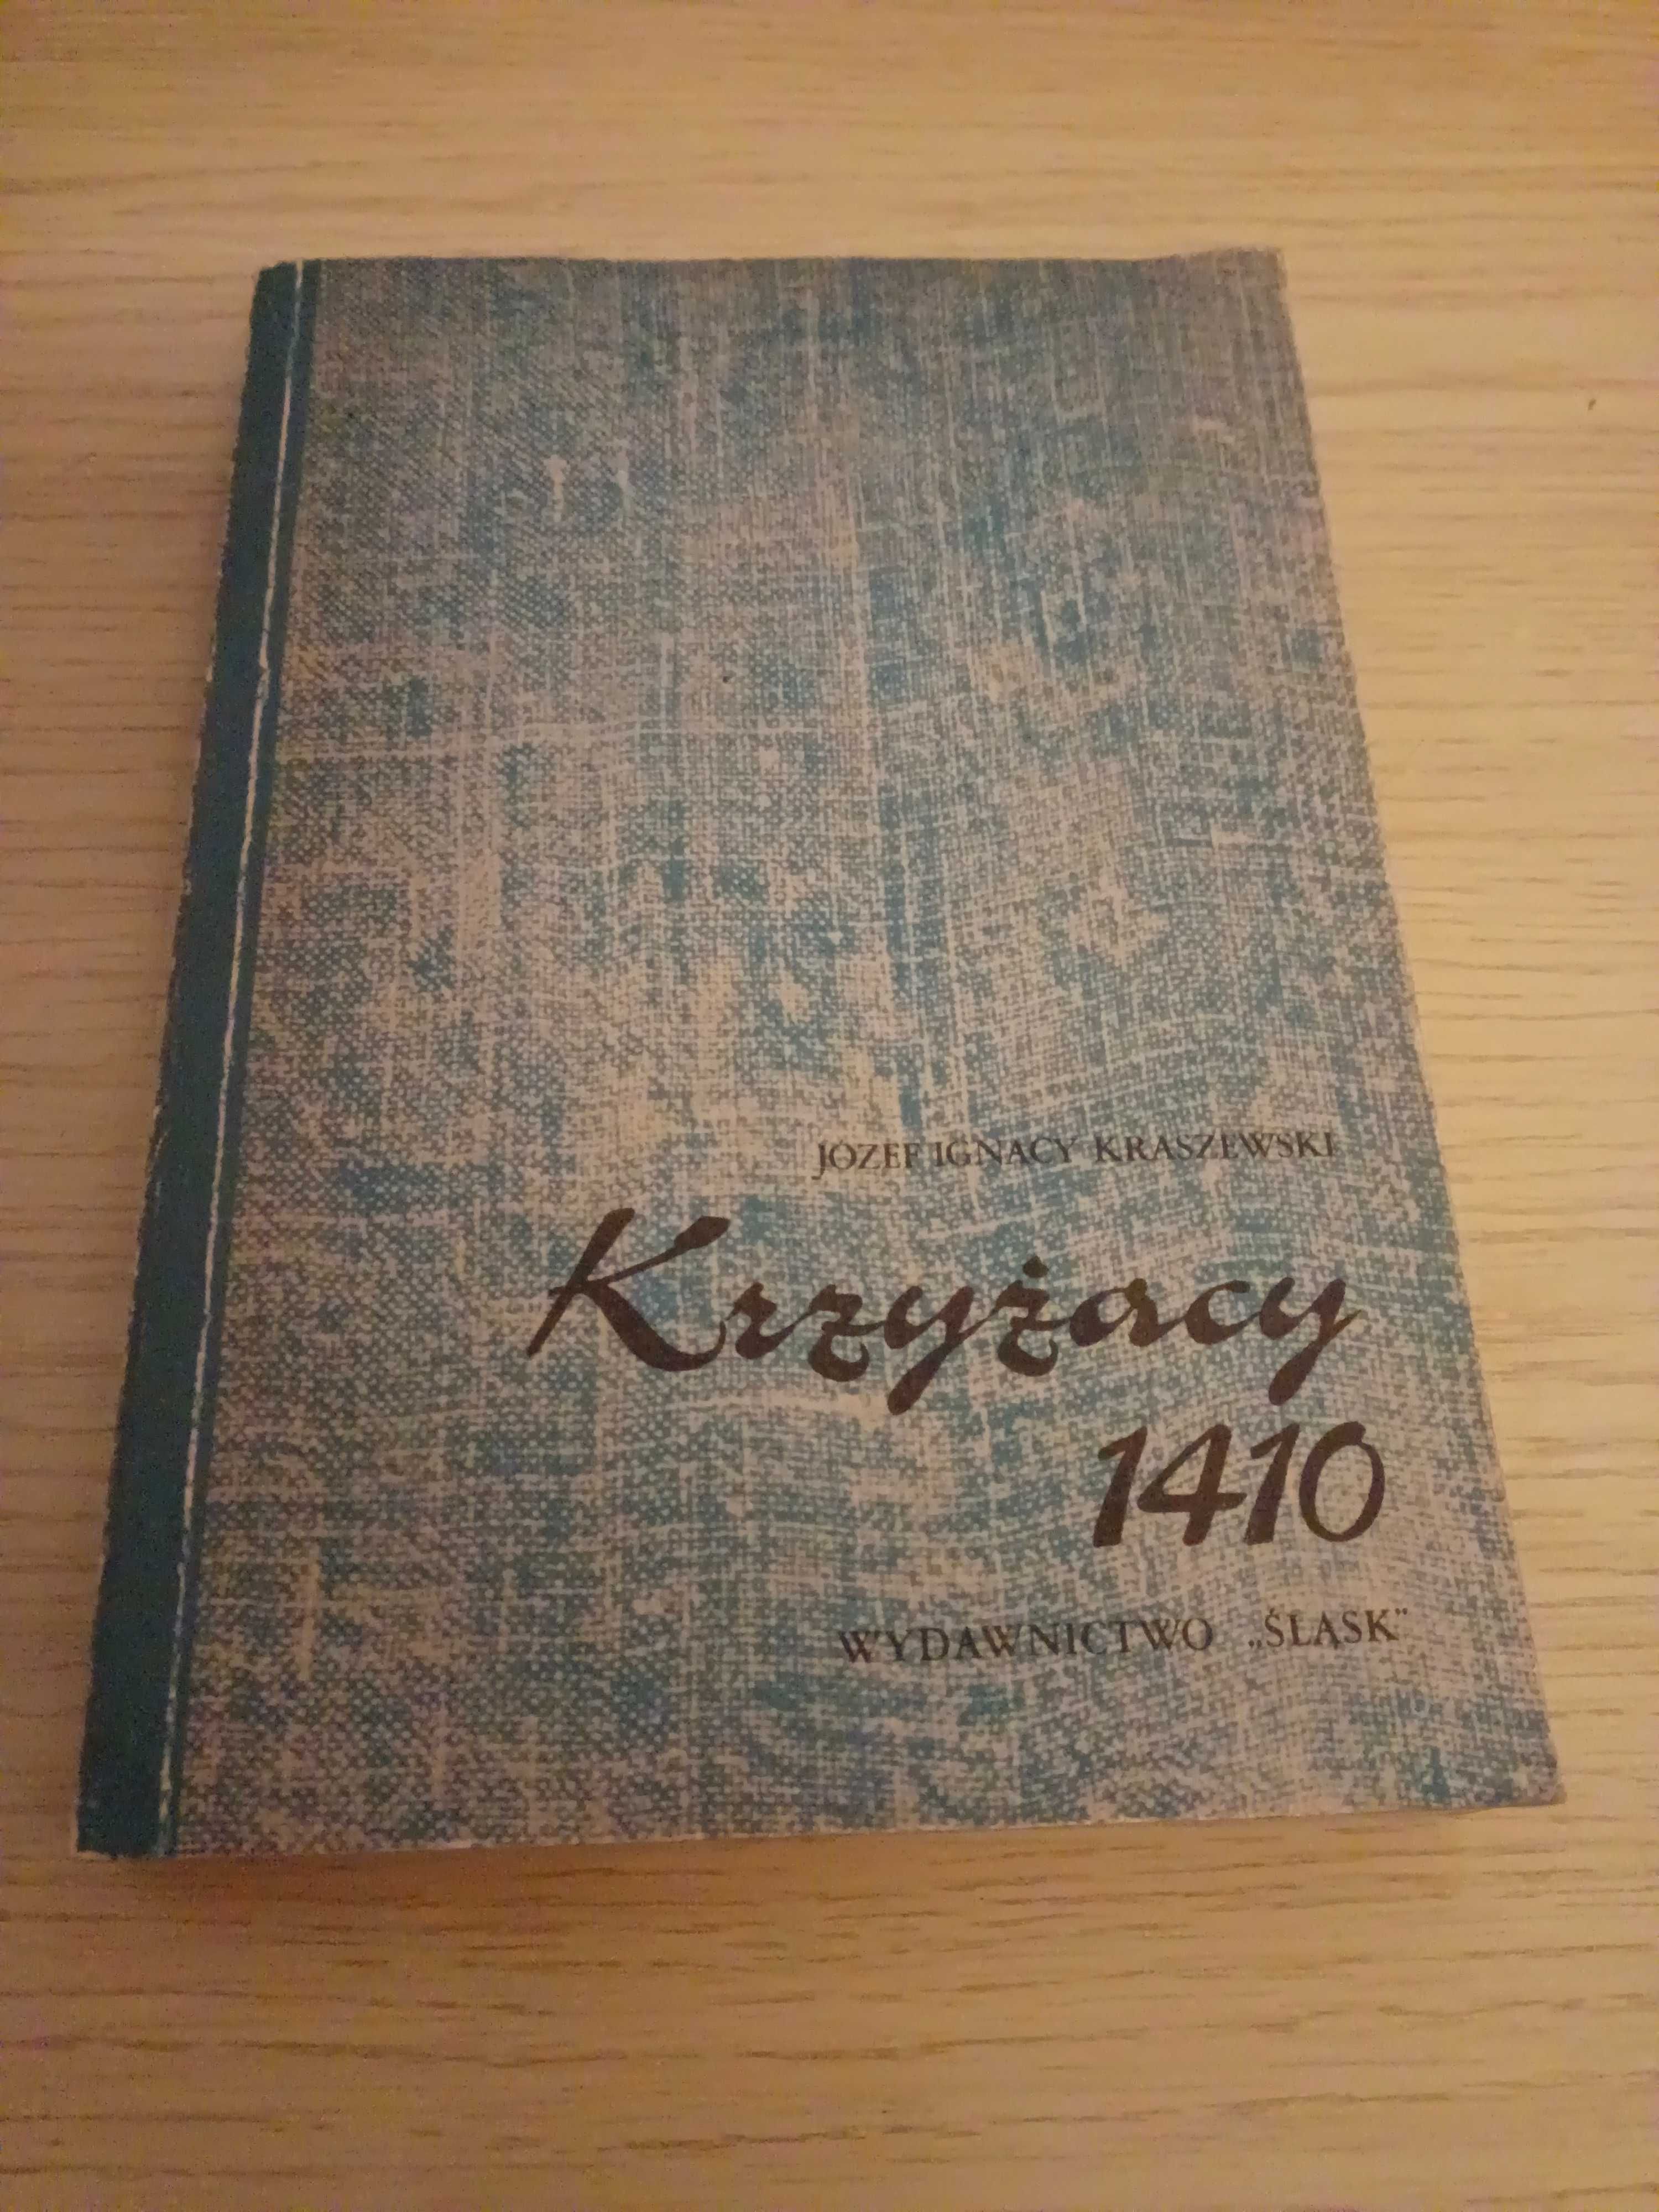 Ignacy Józef Kraszewski - "Krzyżacy 1410"